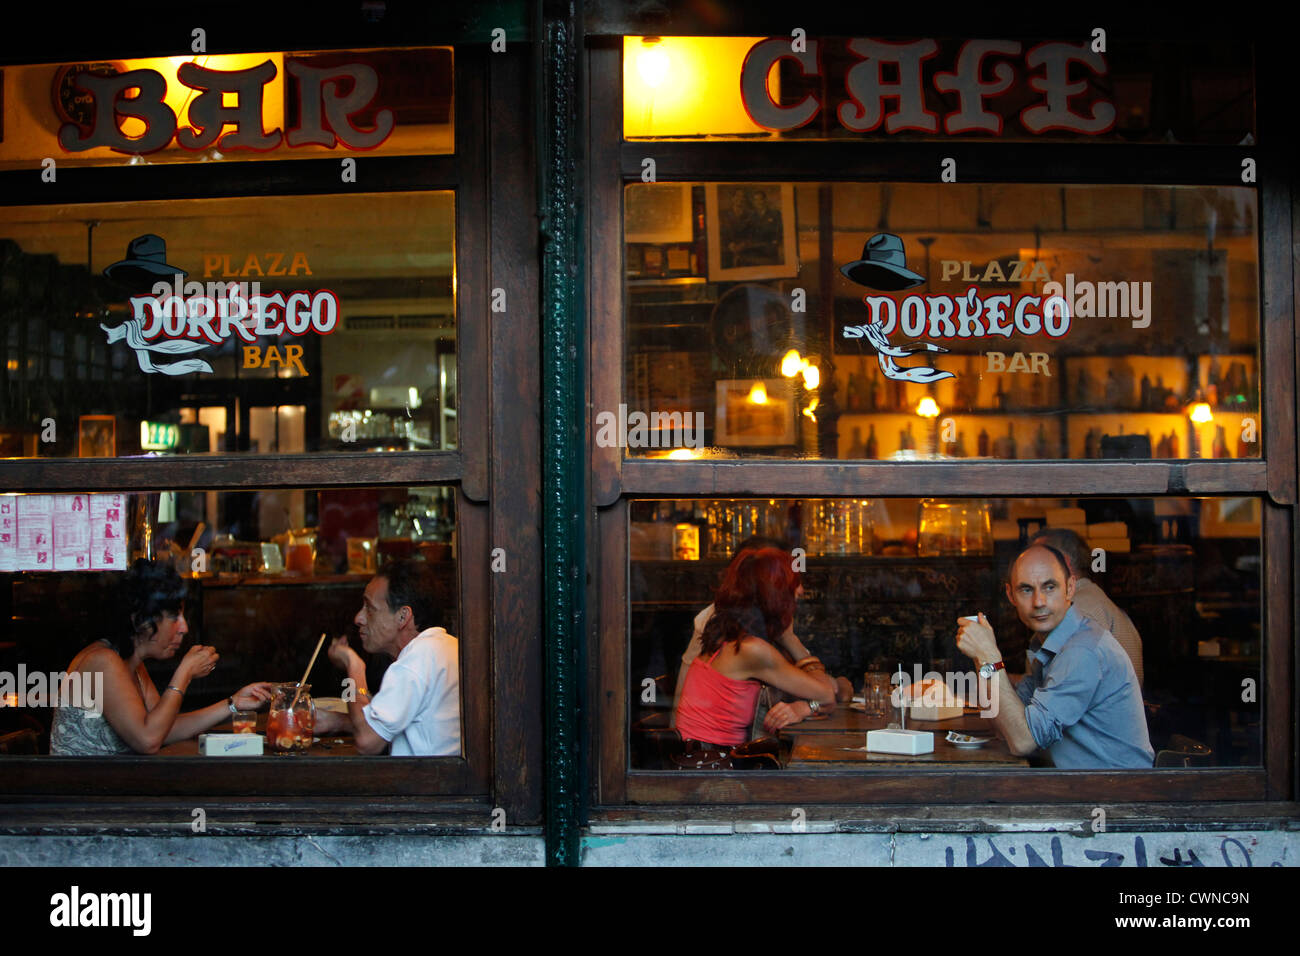 Bar Plaza Dorrego in San Telmo, Buenos Aires, Argentina. Stock Photo